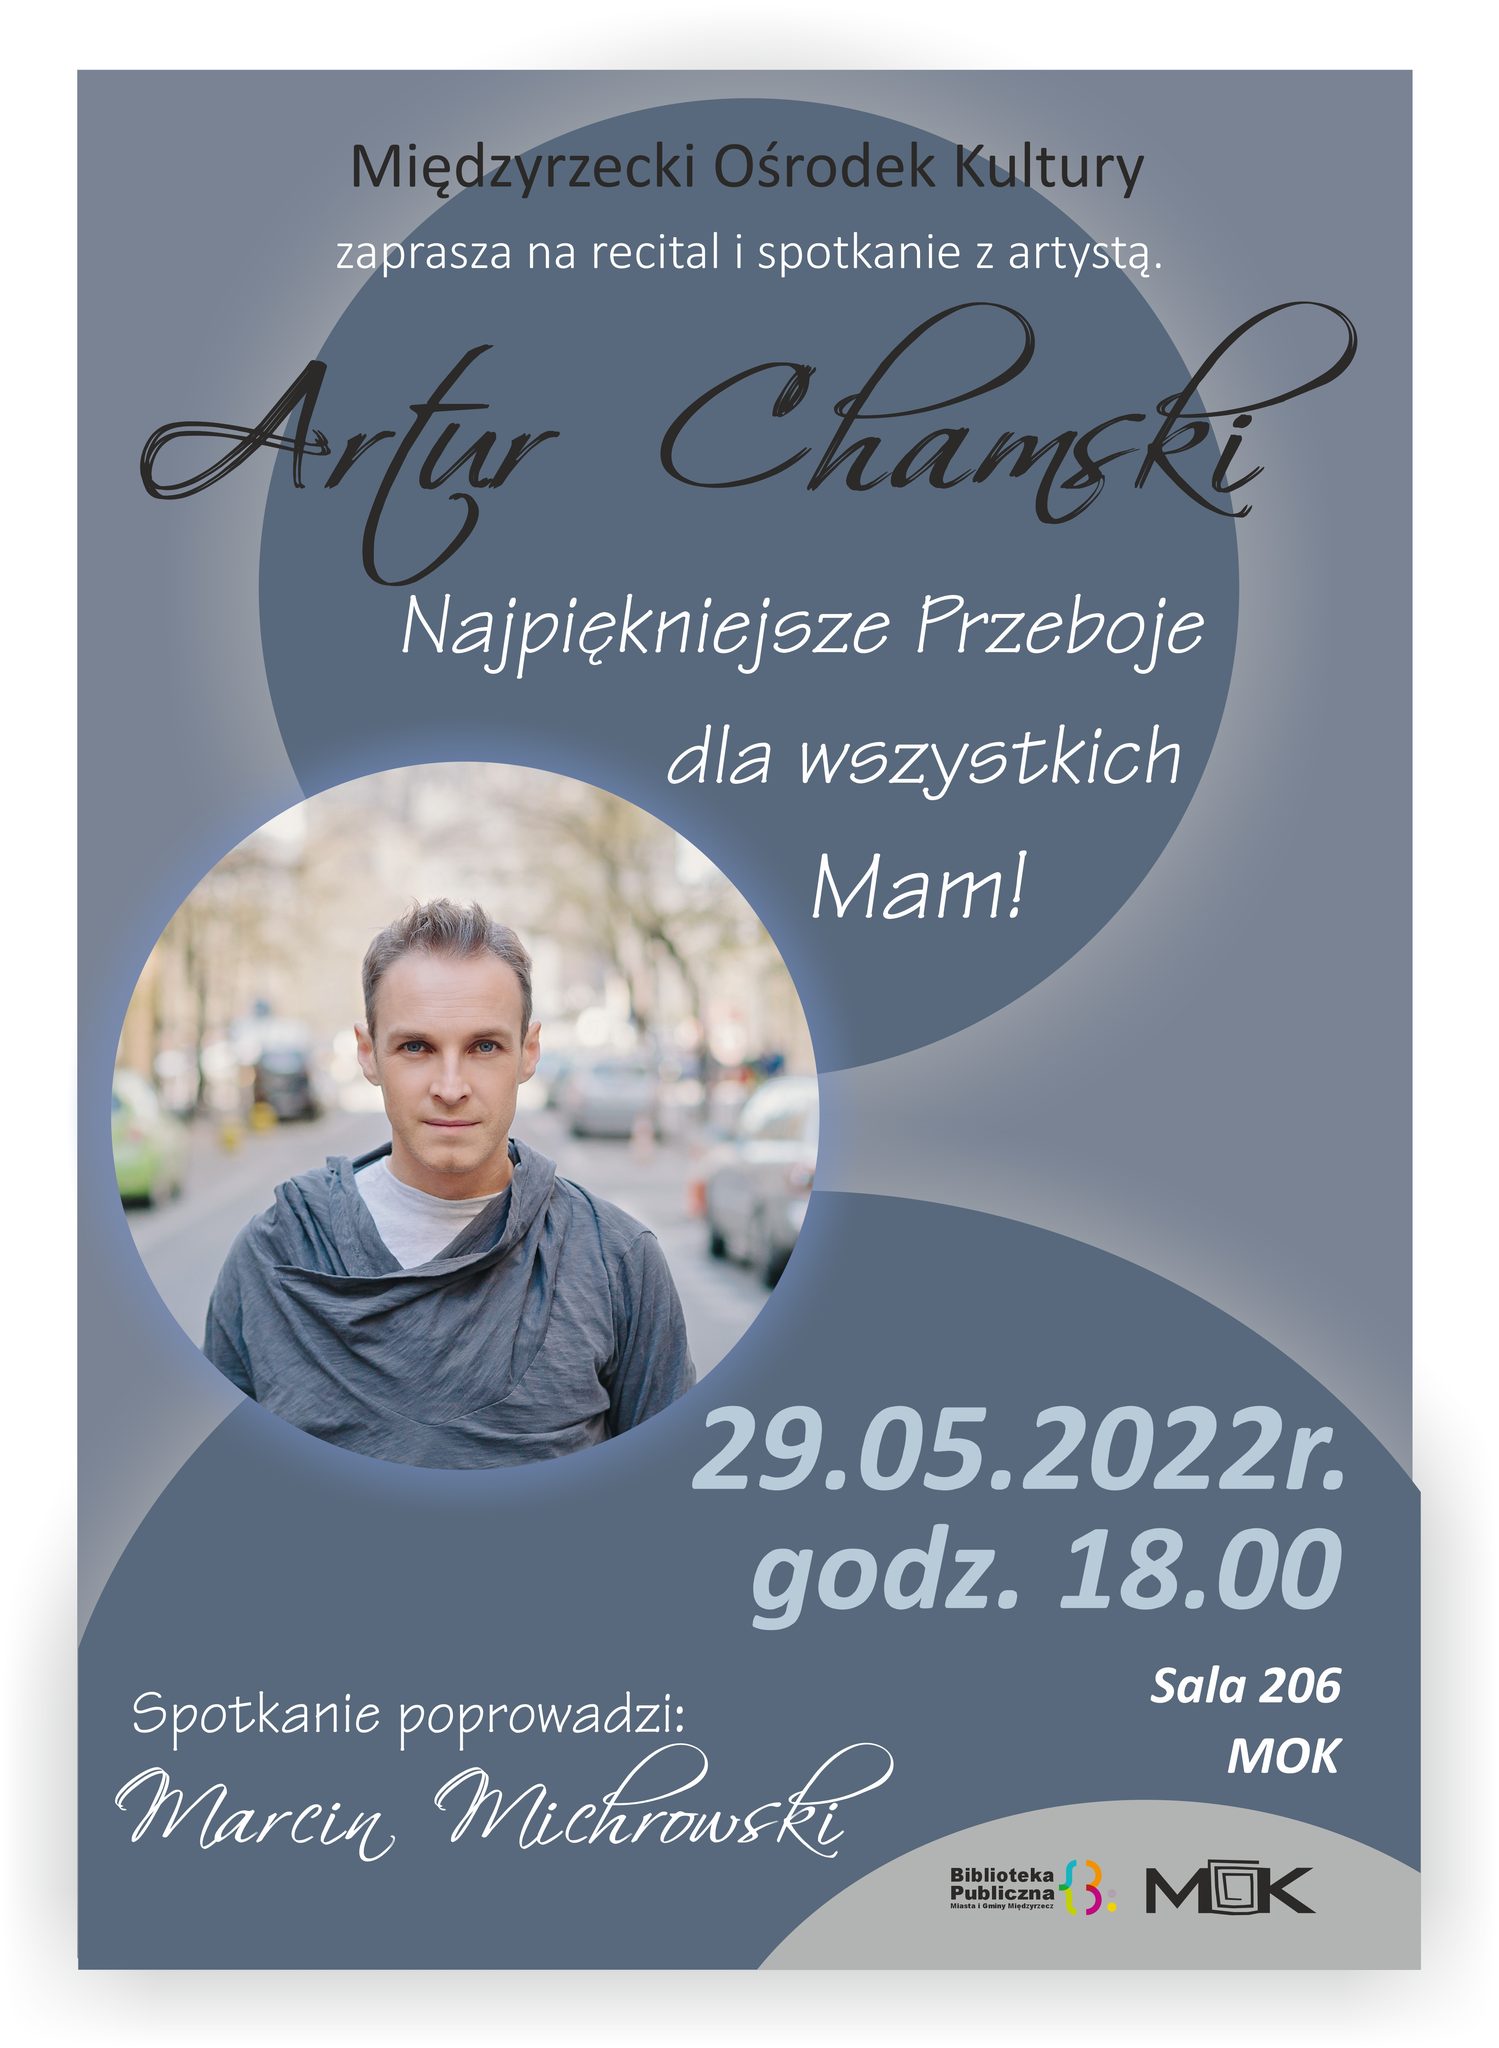 Plakat promujący recital Artura Chamskiego